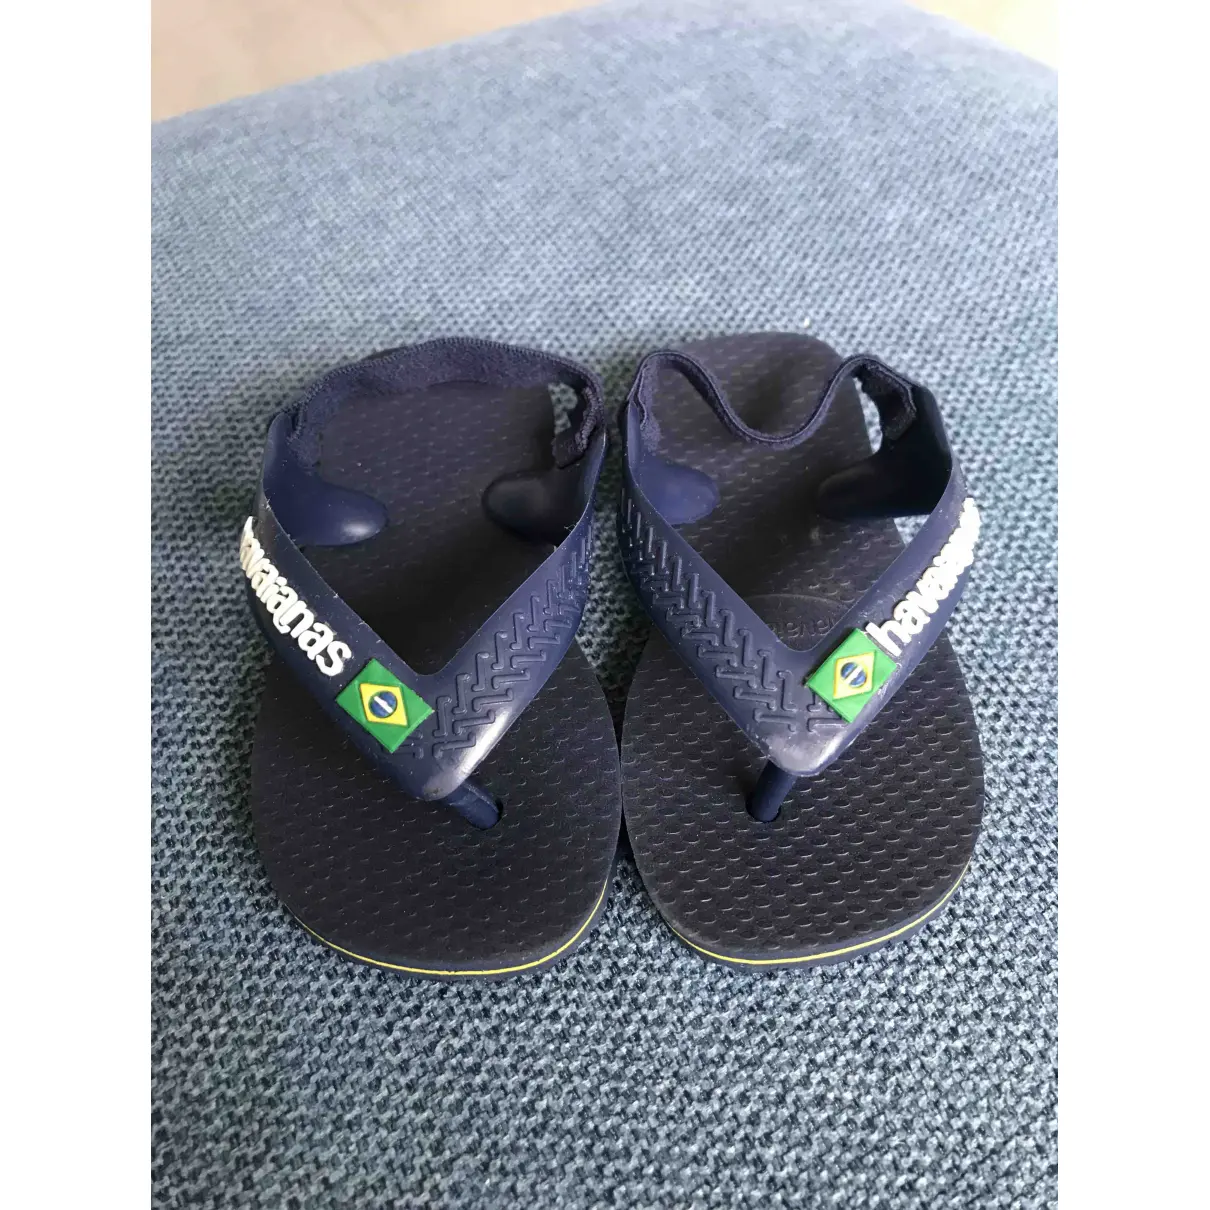 Buy HAVAIANAS Sandals online